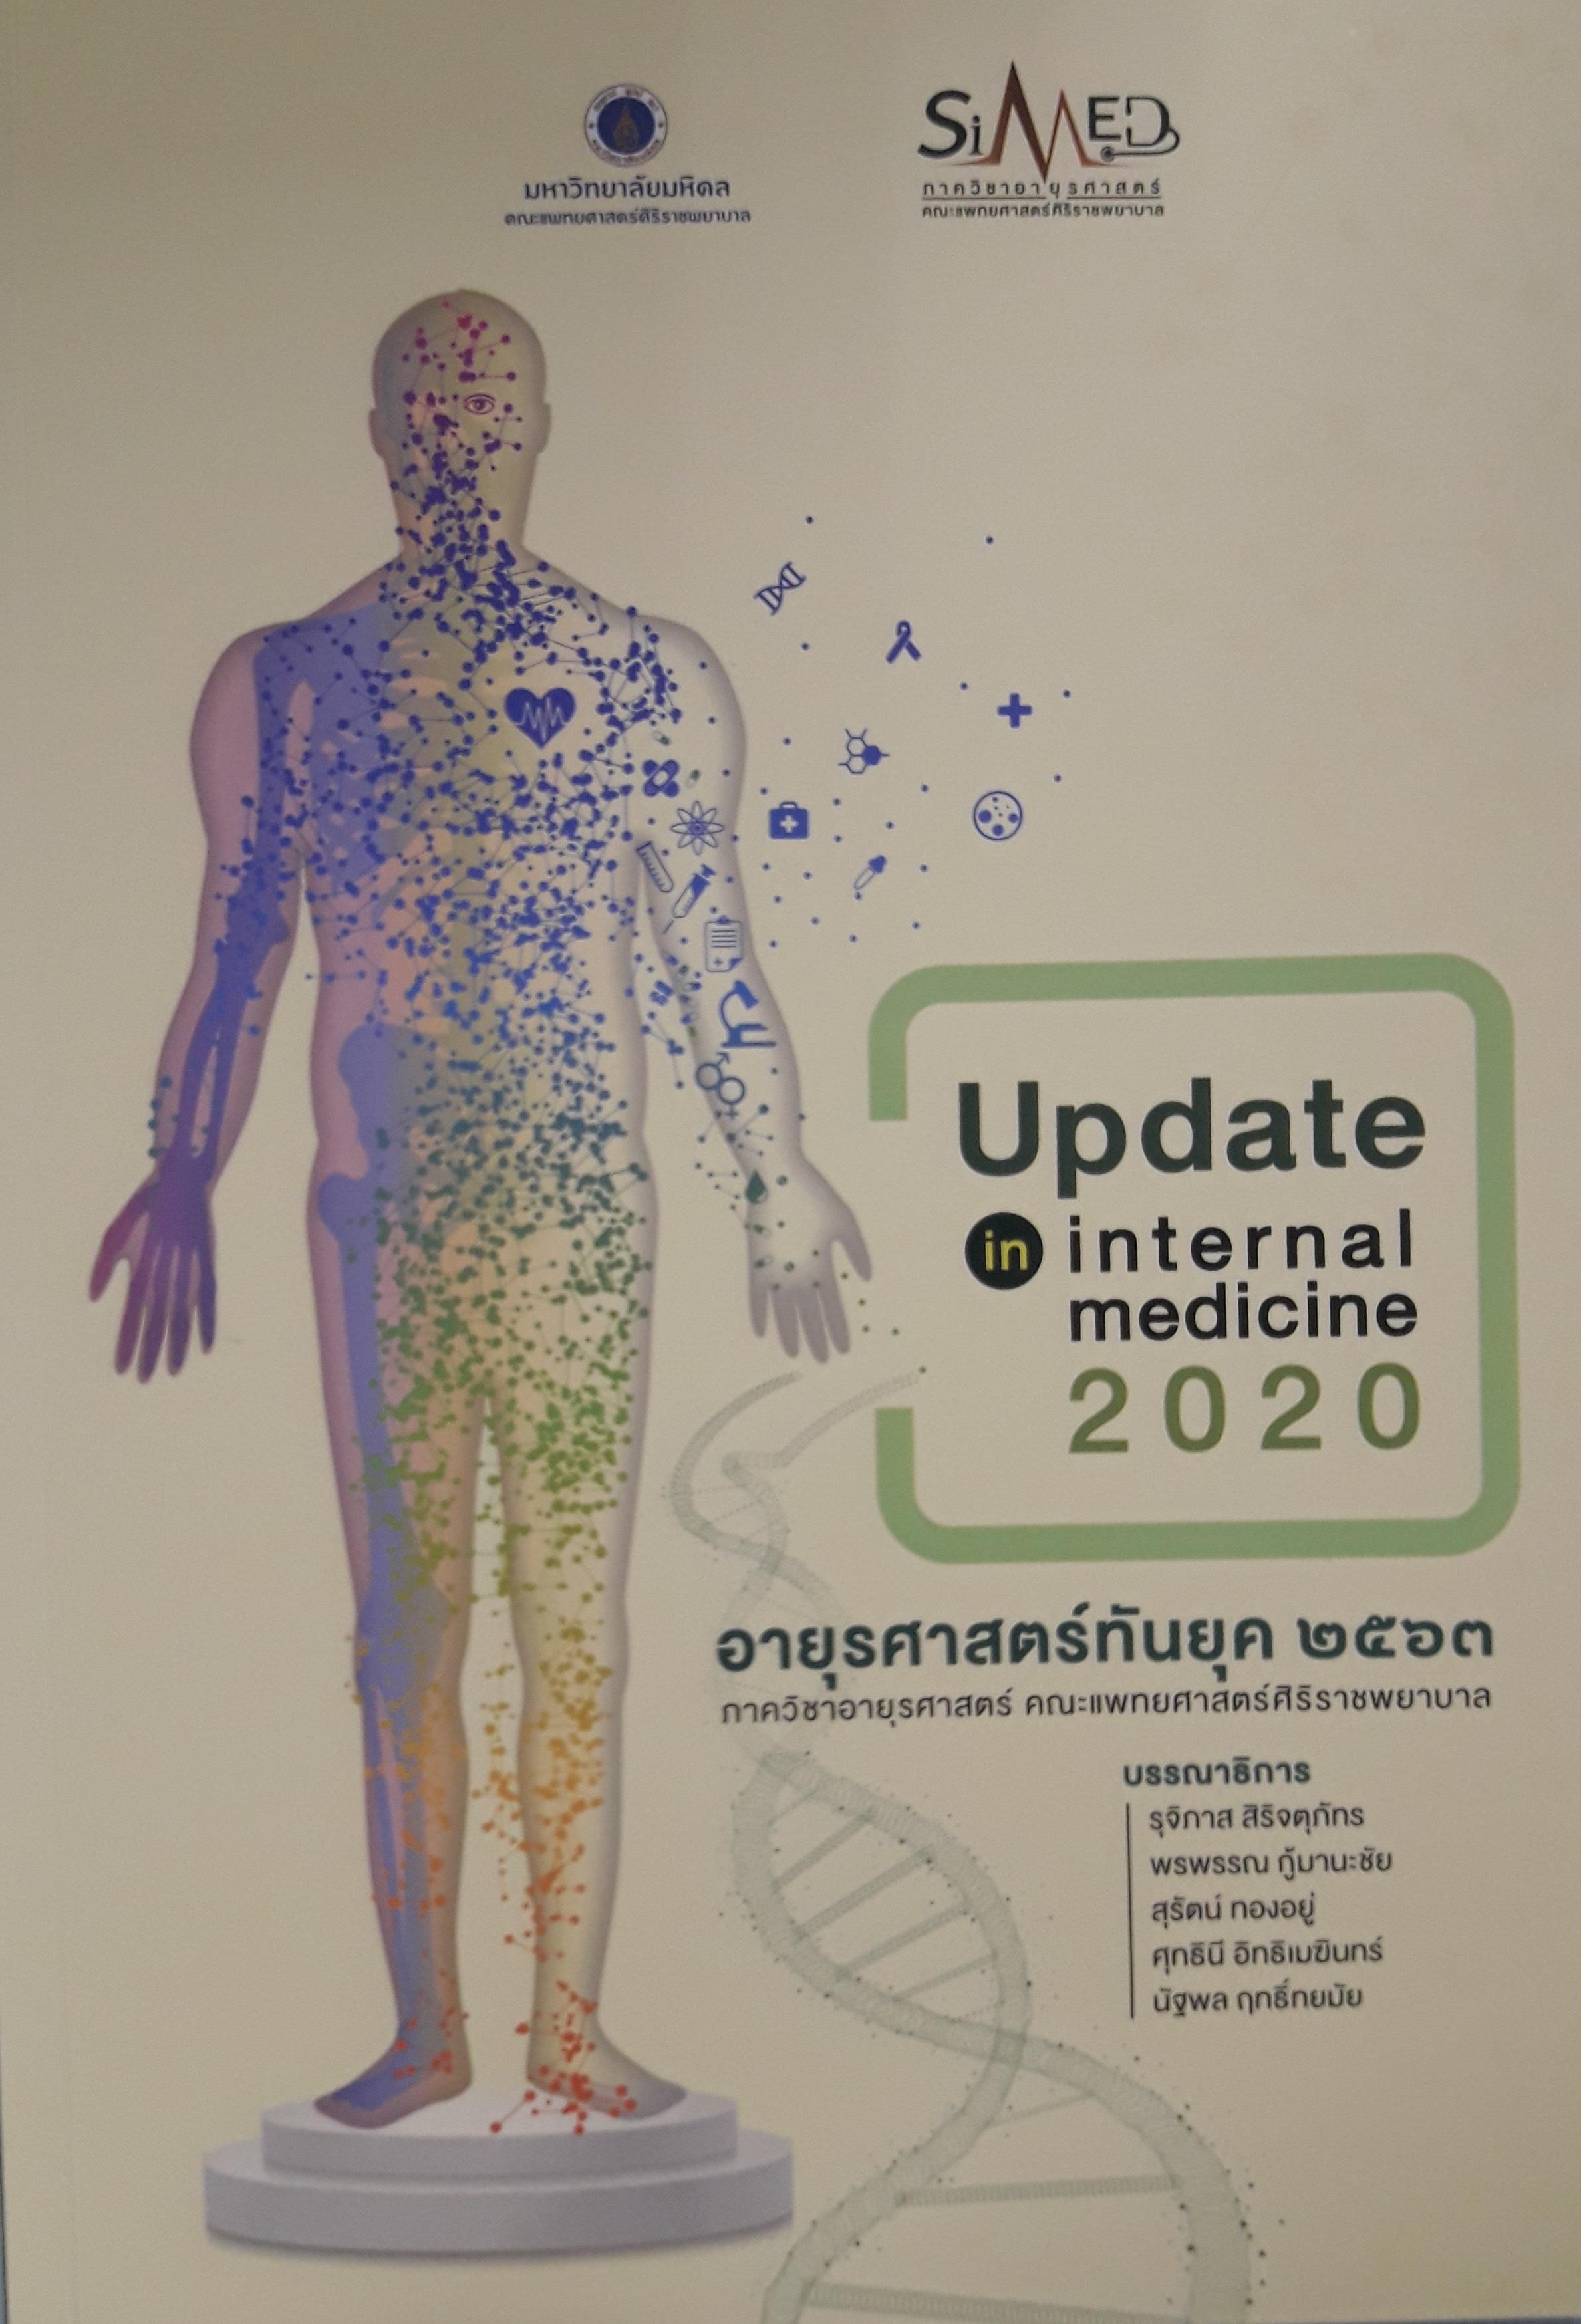 อายุรศาสตร์ทันยุค 2563 = Update in internal medicine 2020